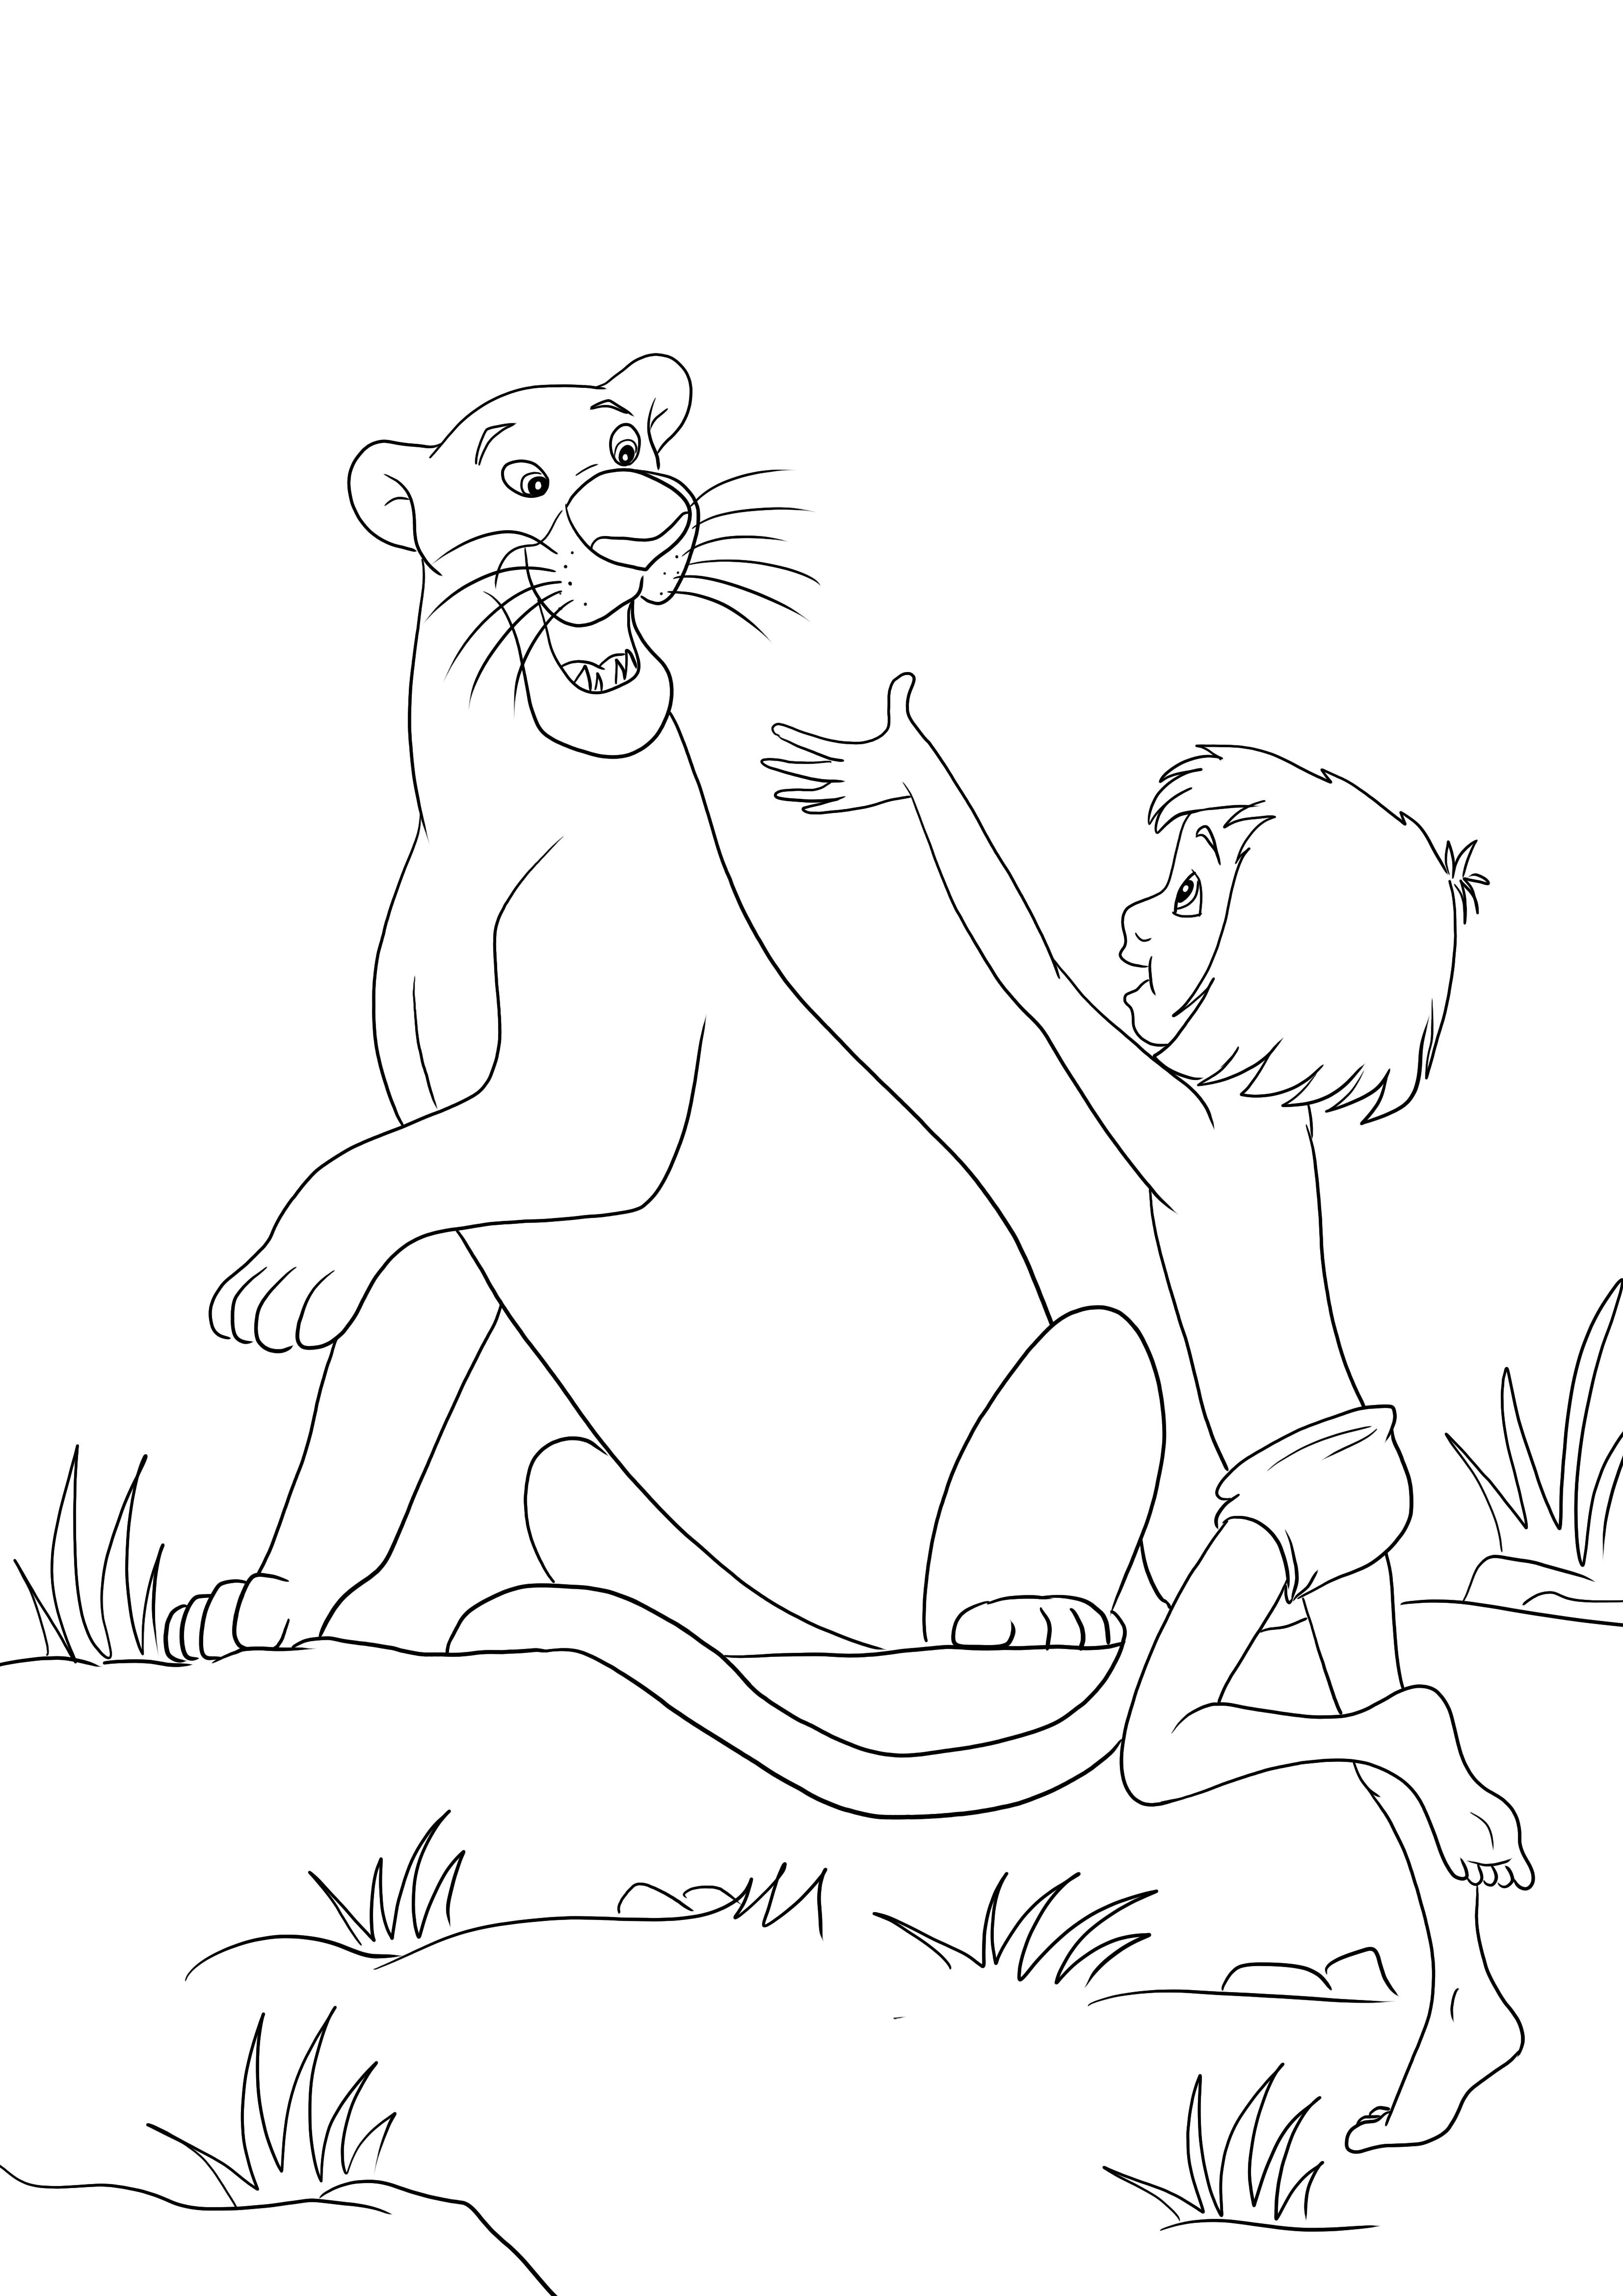 Mowgli y Bagheera son felices juntos-imagen para colorear y descargar gratis